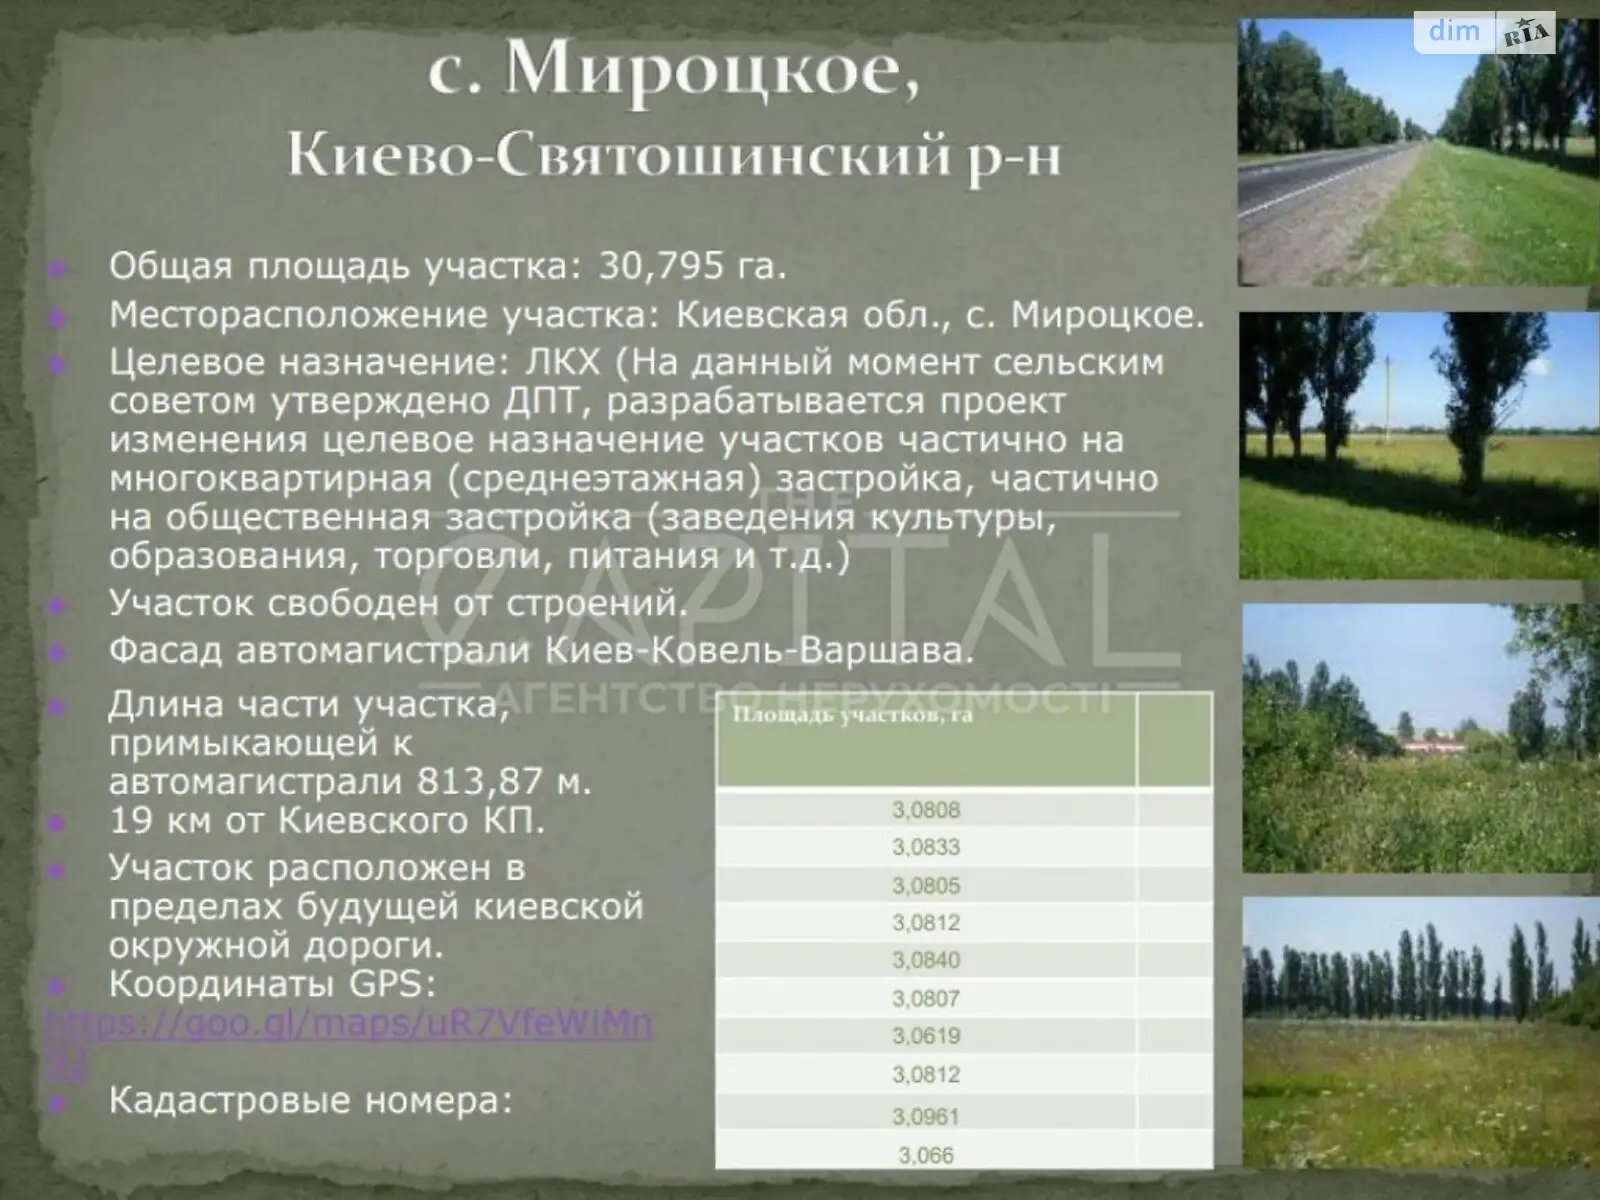 Продается земельный участок 3079 соток в Киевской области, цена: 3079570 $